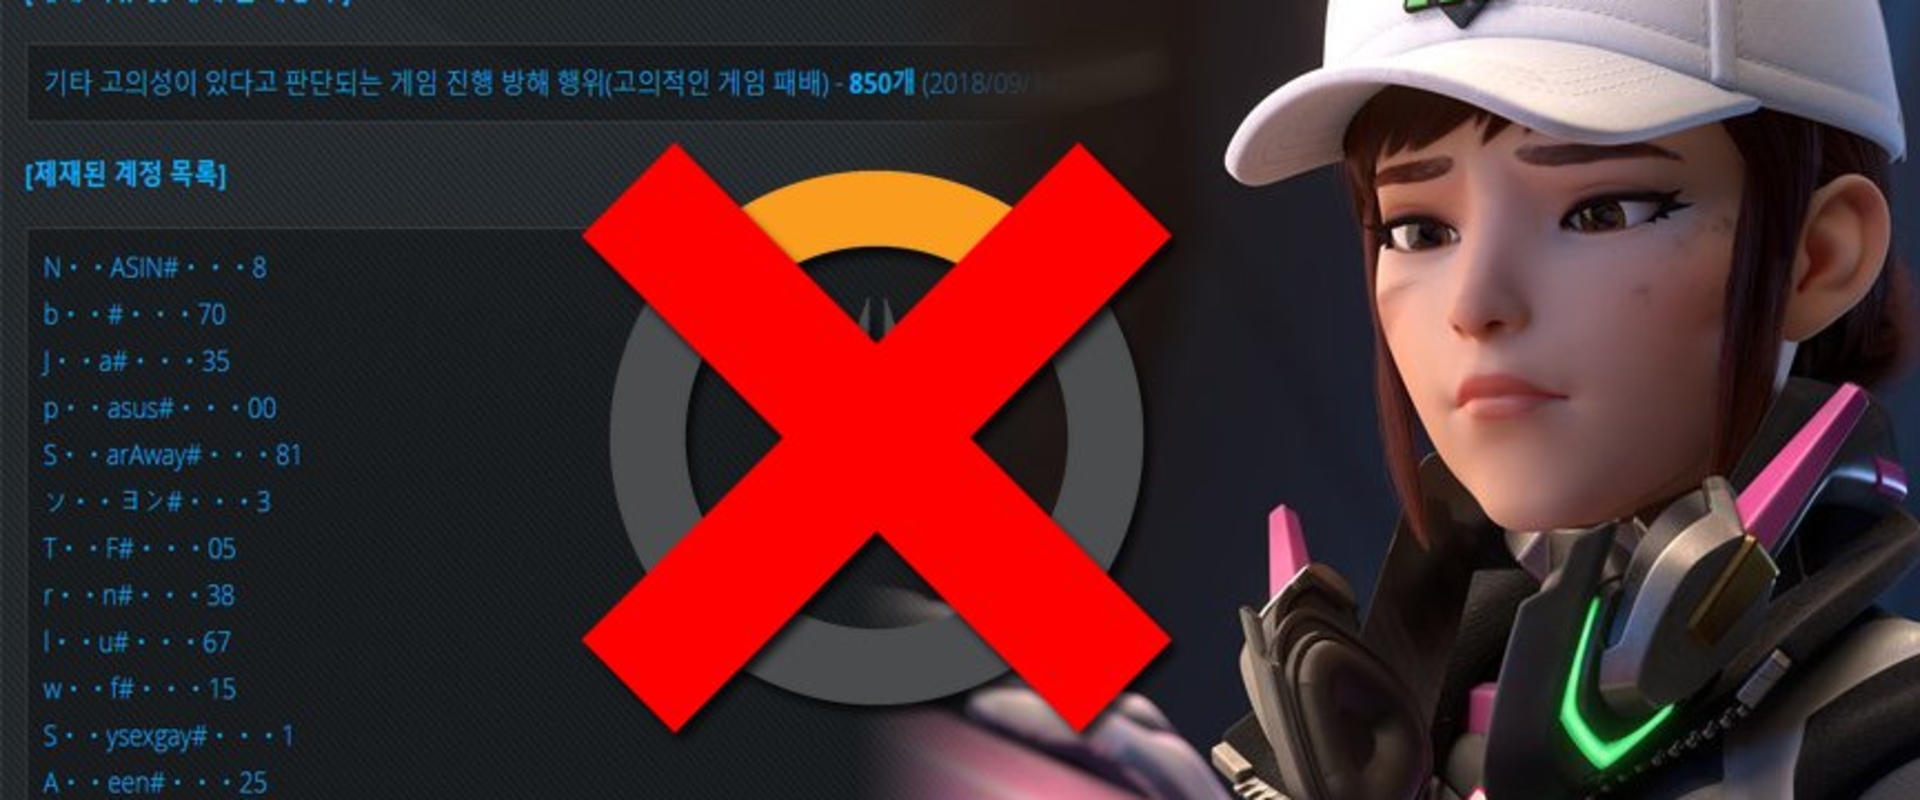 Dél-Koreában ismét 850 felhasználót tiltottak ki, –ezúttal meccseldobásért